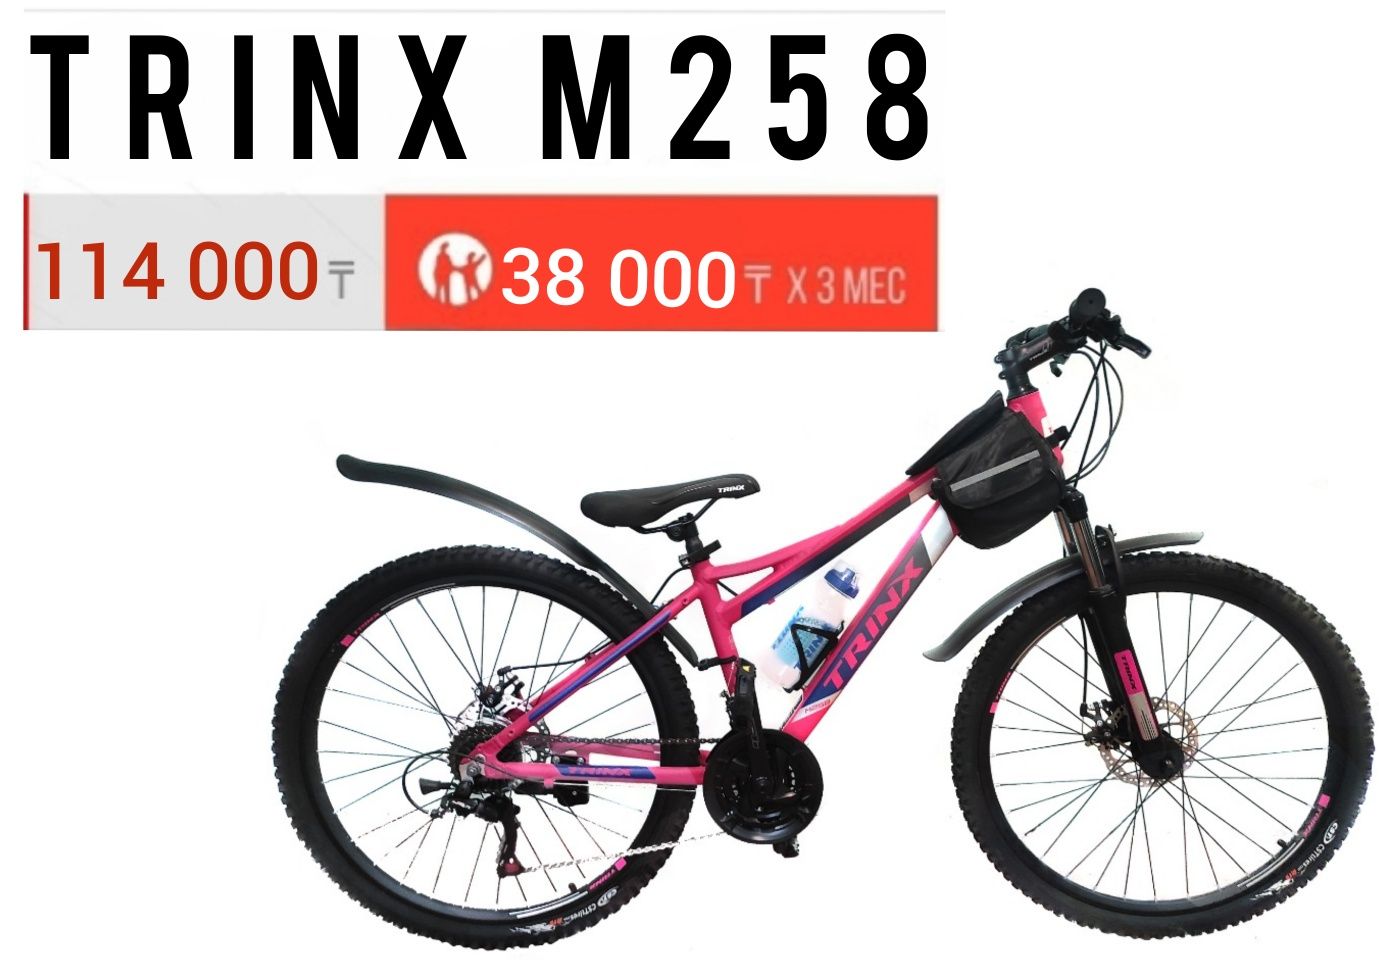 Горный велосипед Trinx m258. Рама 15". Колеса 26". Рассрочка.